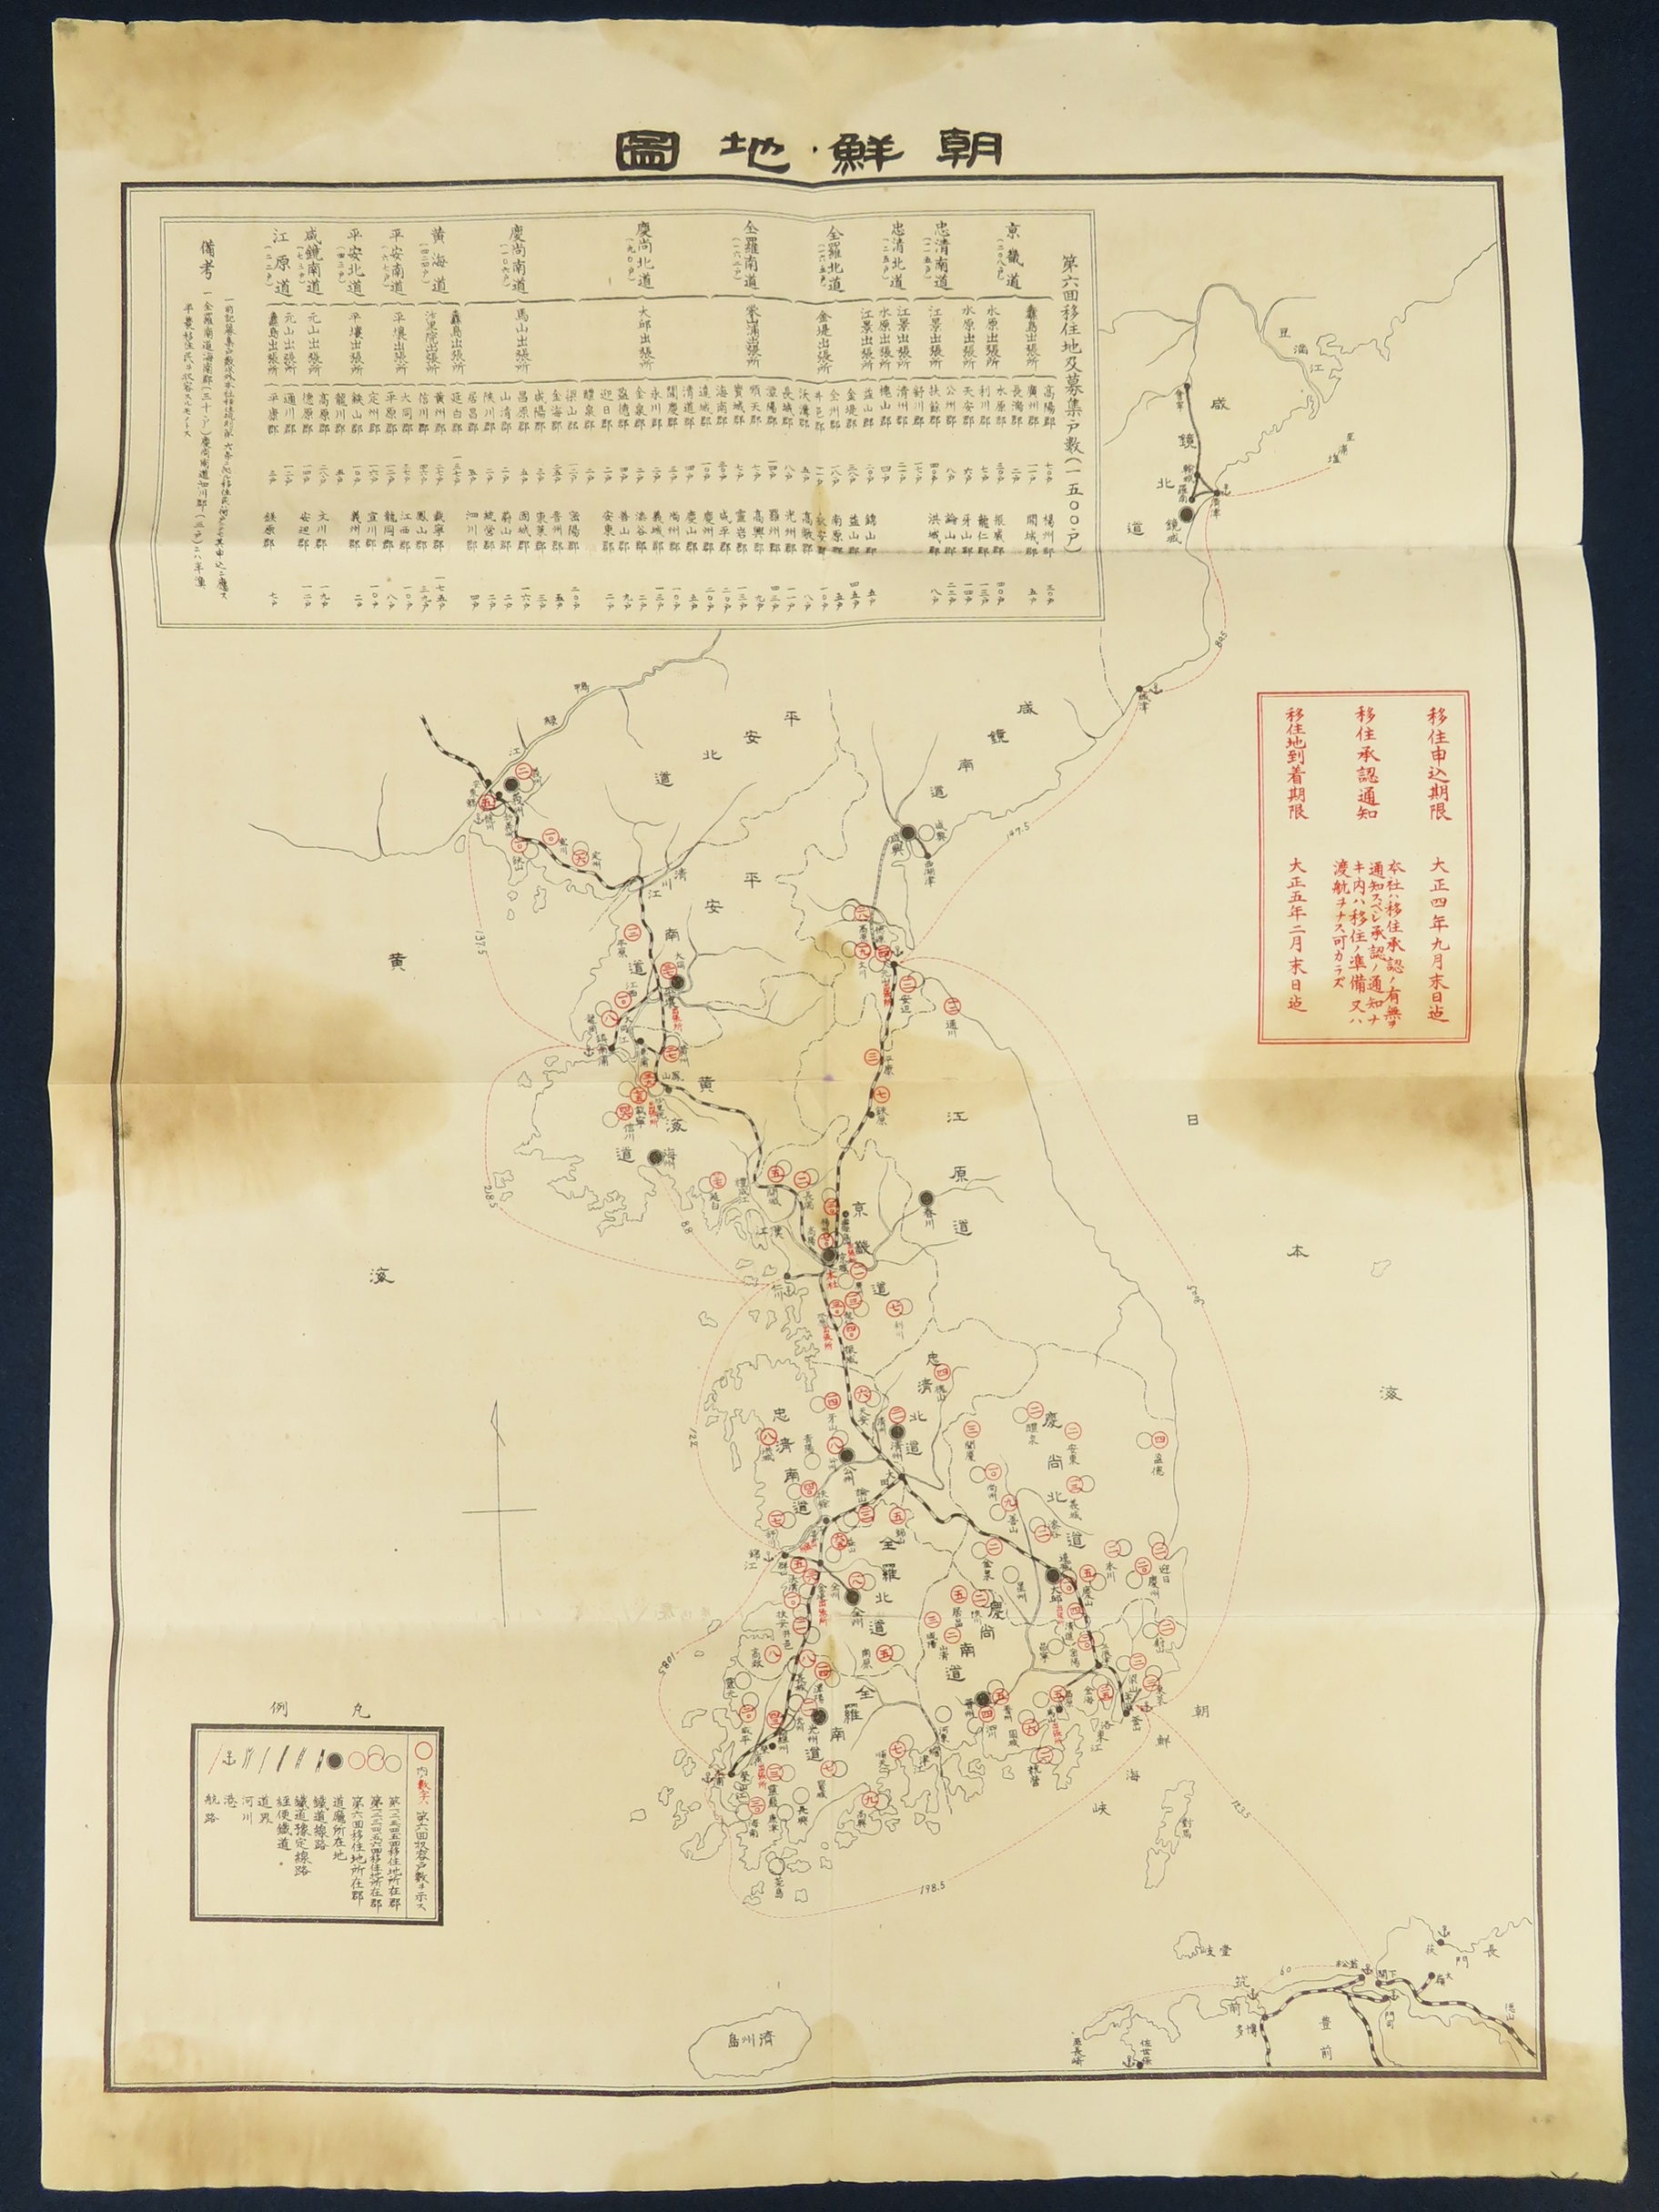 神戸 古本買取 古書出張買取 朝鮮 古地図